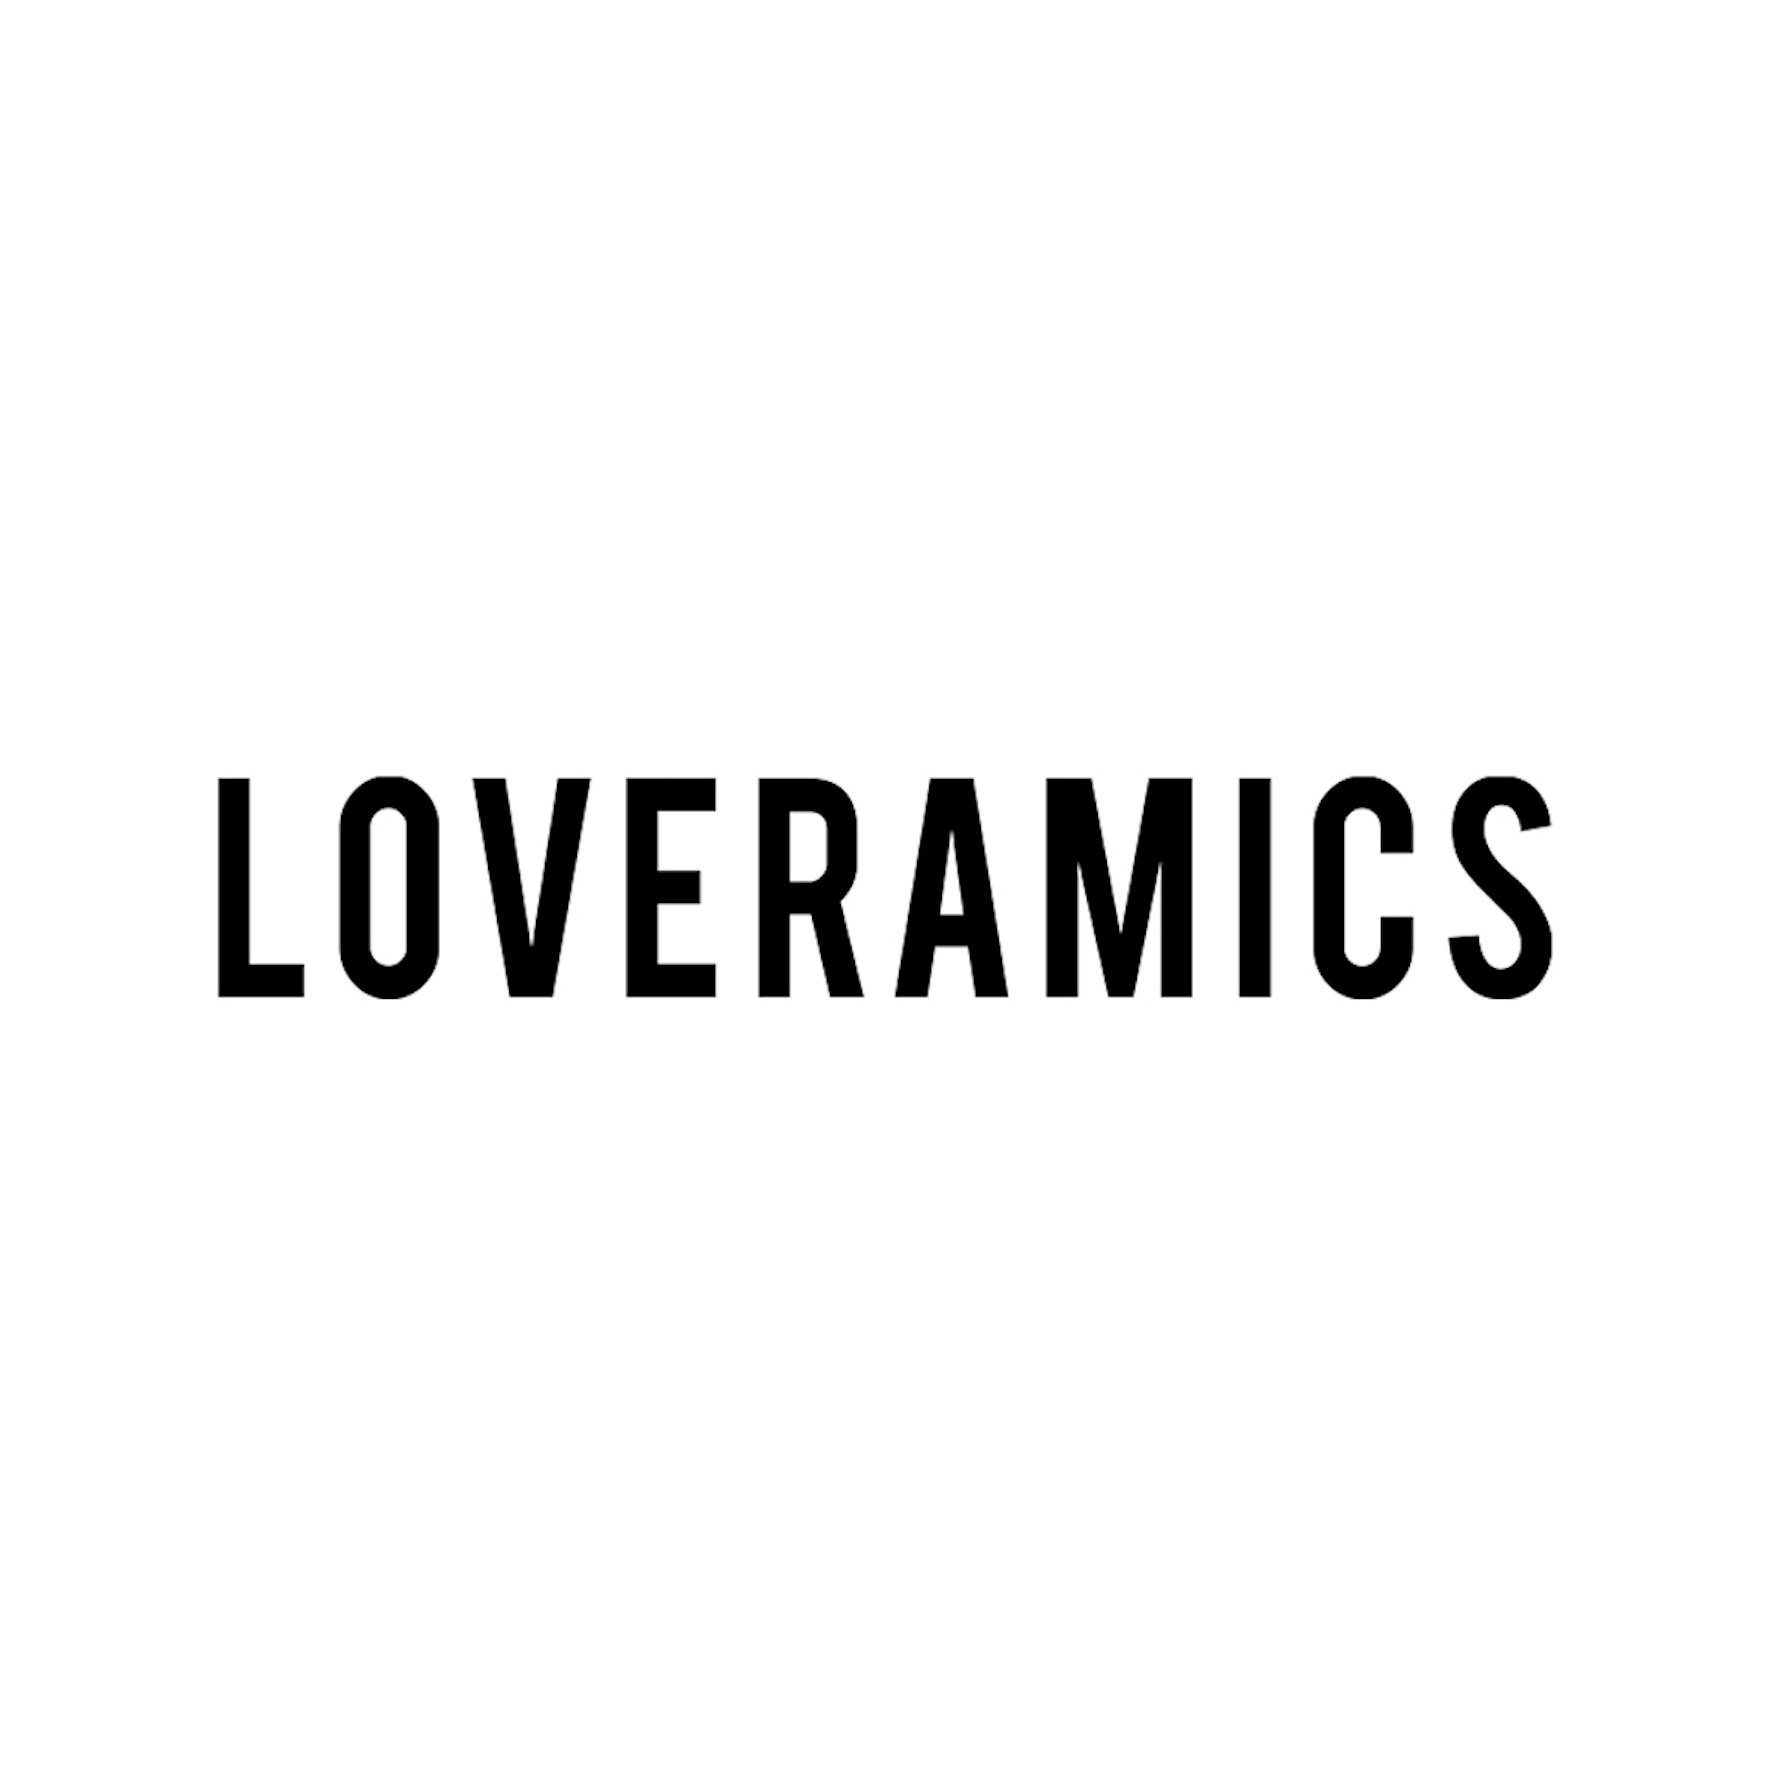 Loveramics